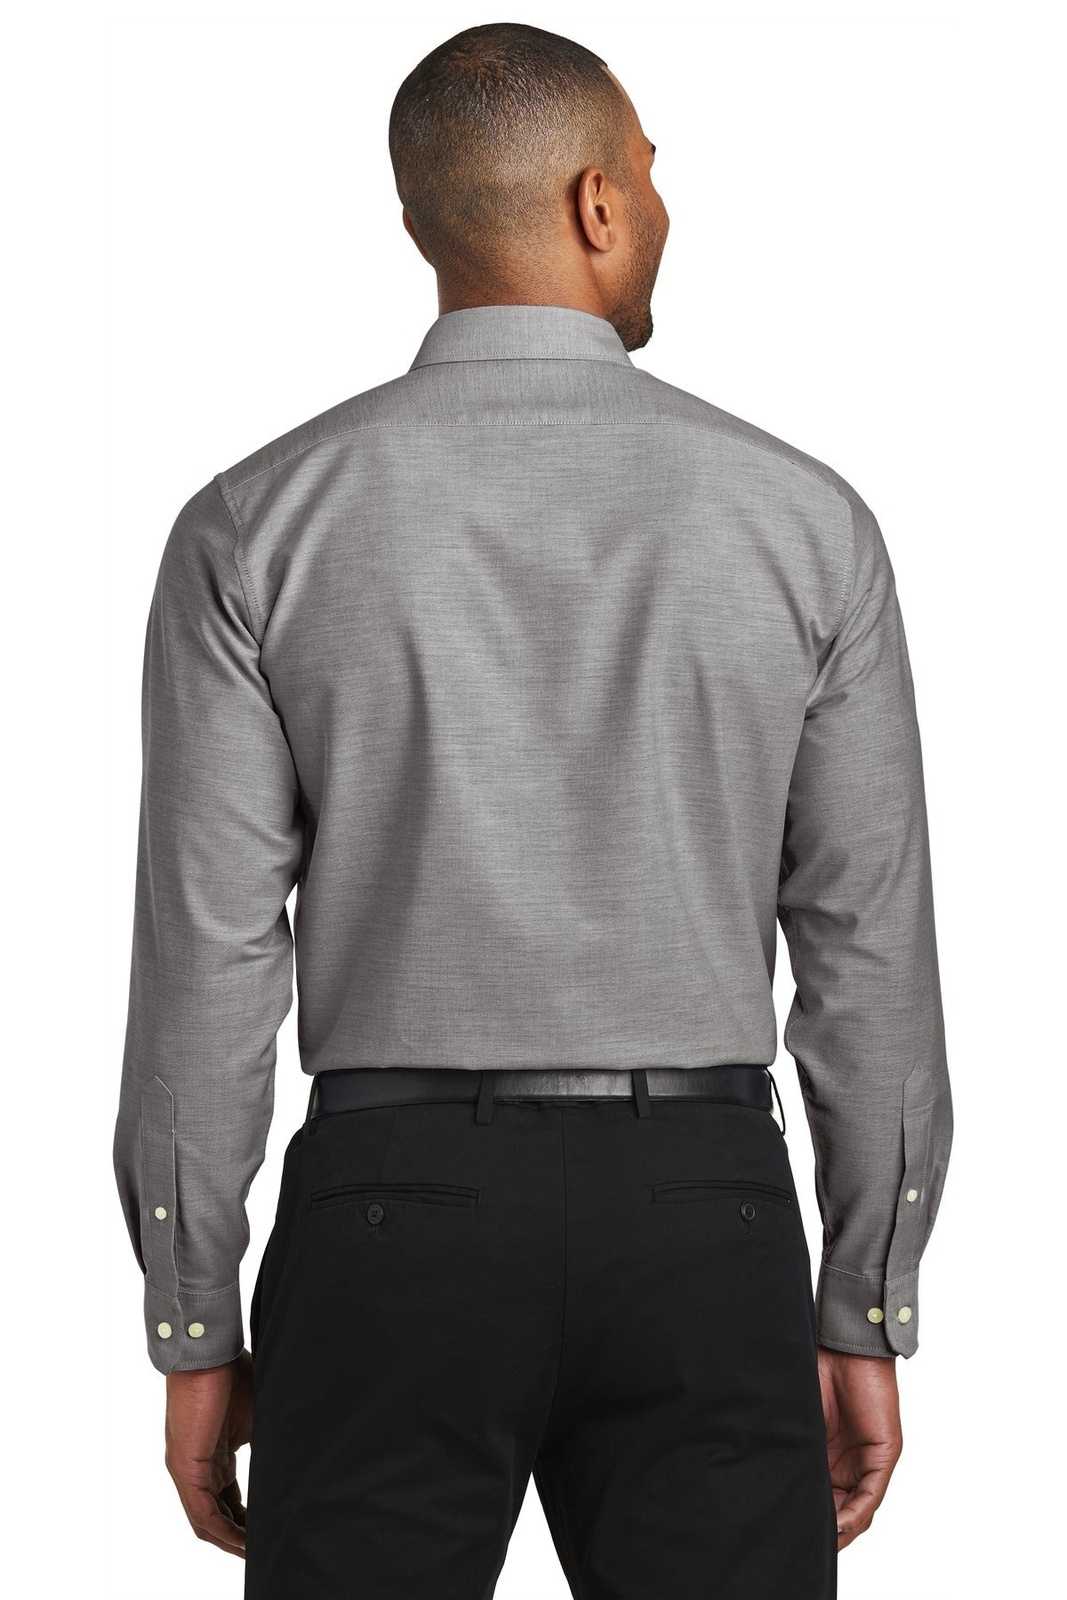 Port Authority S661 Slim Fit Superpro Oxford Shirt - Black - HIT a Double - 2